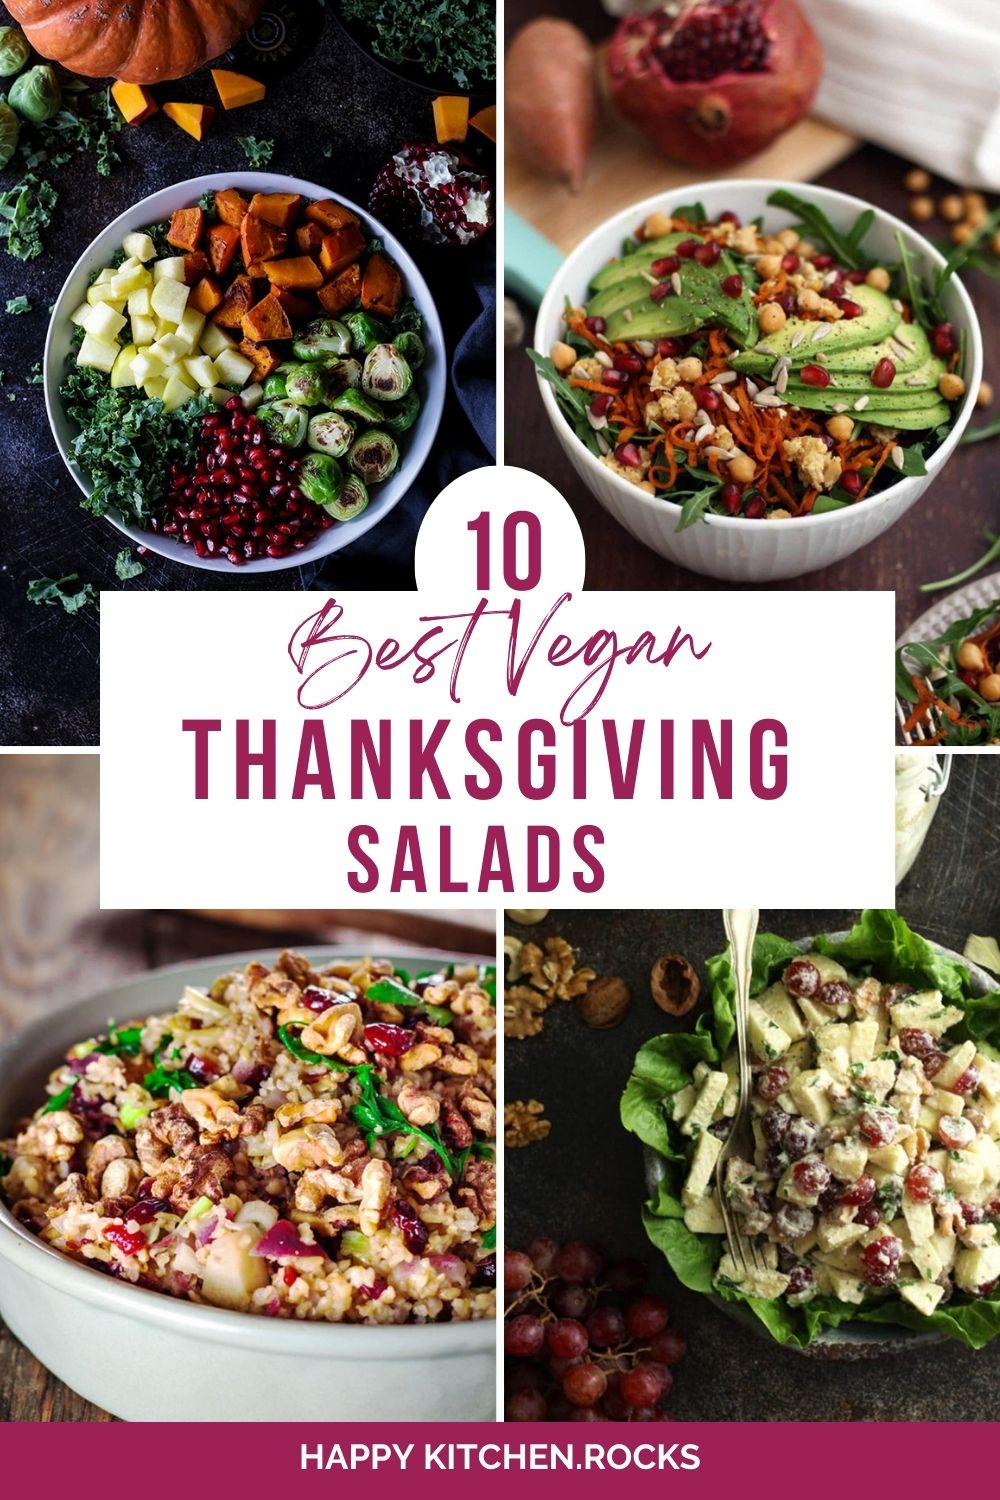 Vegan Thanksgiving Salads Roundup Collage.